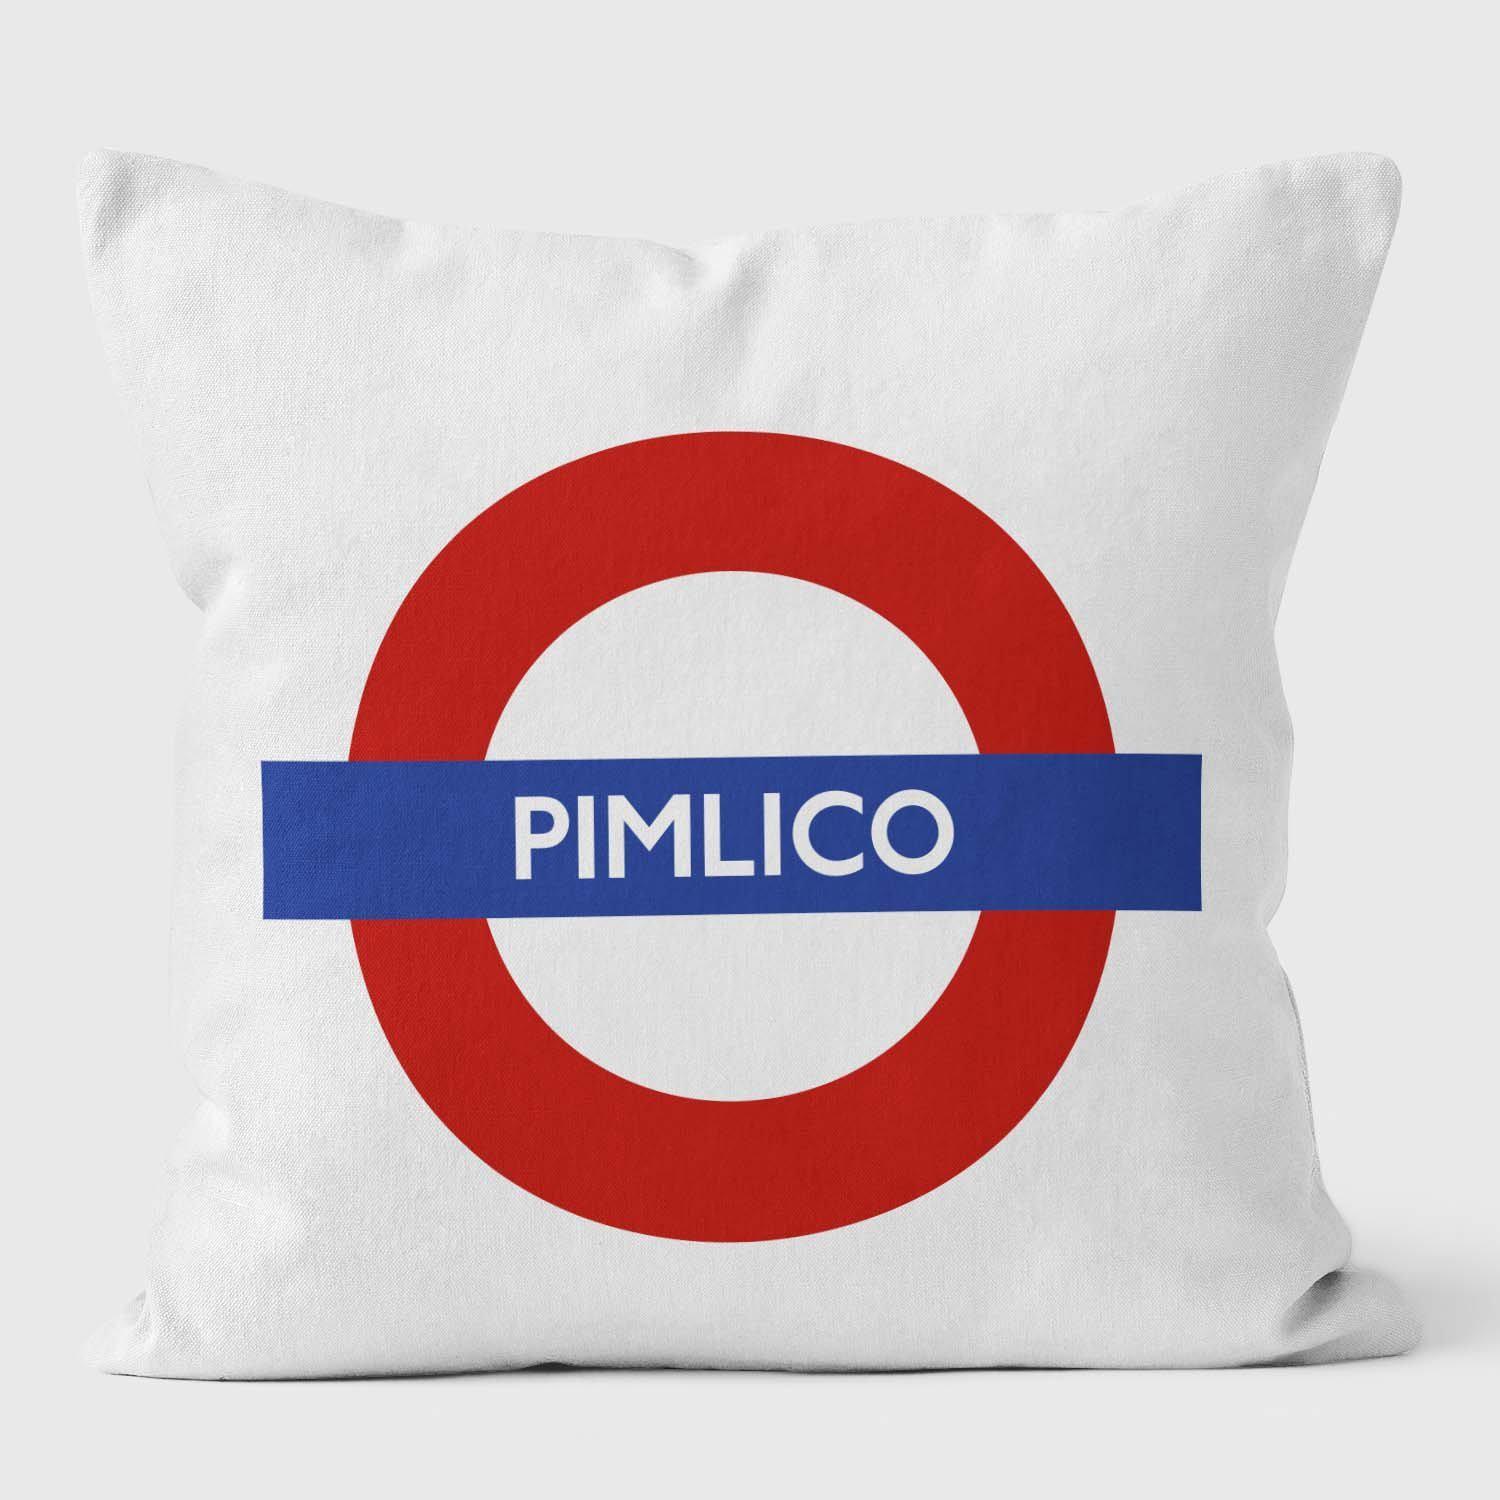 Pimlico London Underground Tube Station Roundel Cushion - Handmade Cushions UK - WeLoveCushions